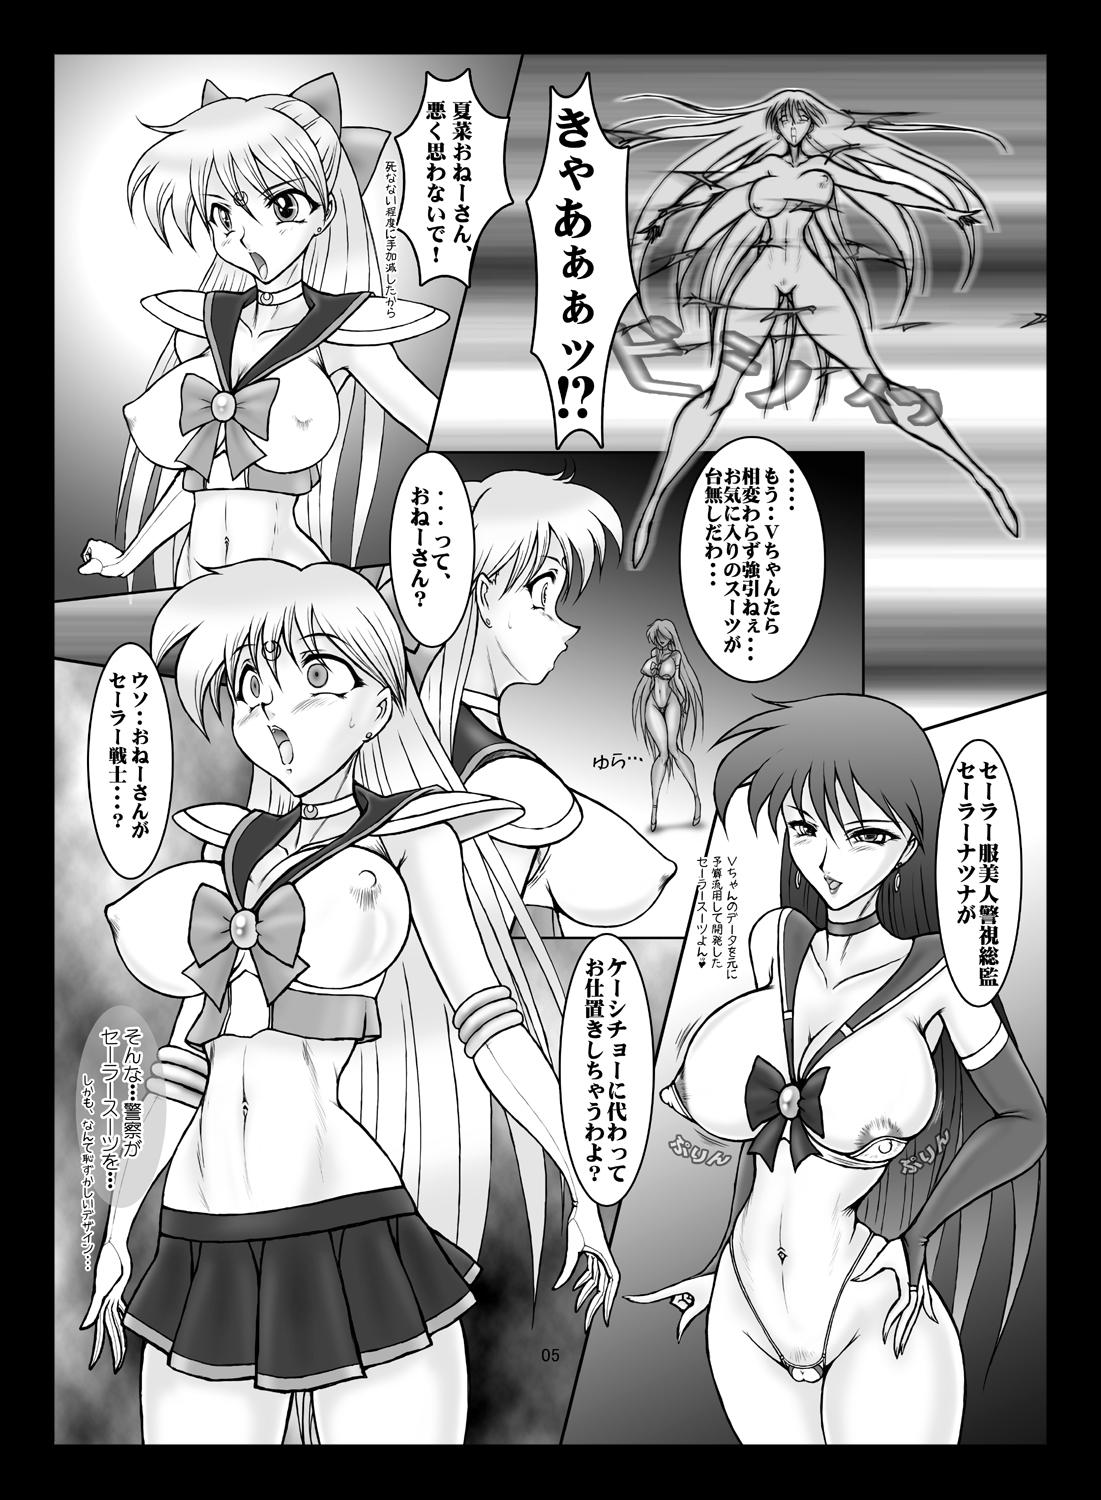 Gayporn V for Sailor V - Sailor moon Amatur Porn - Page 4